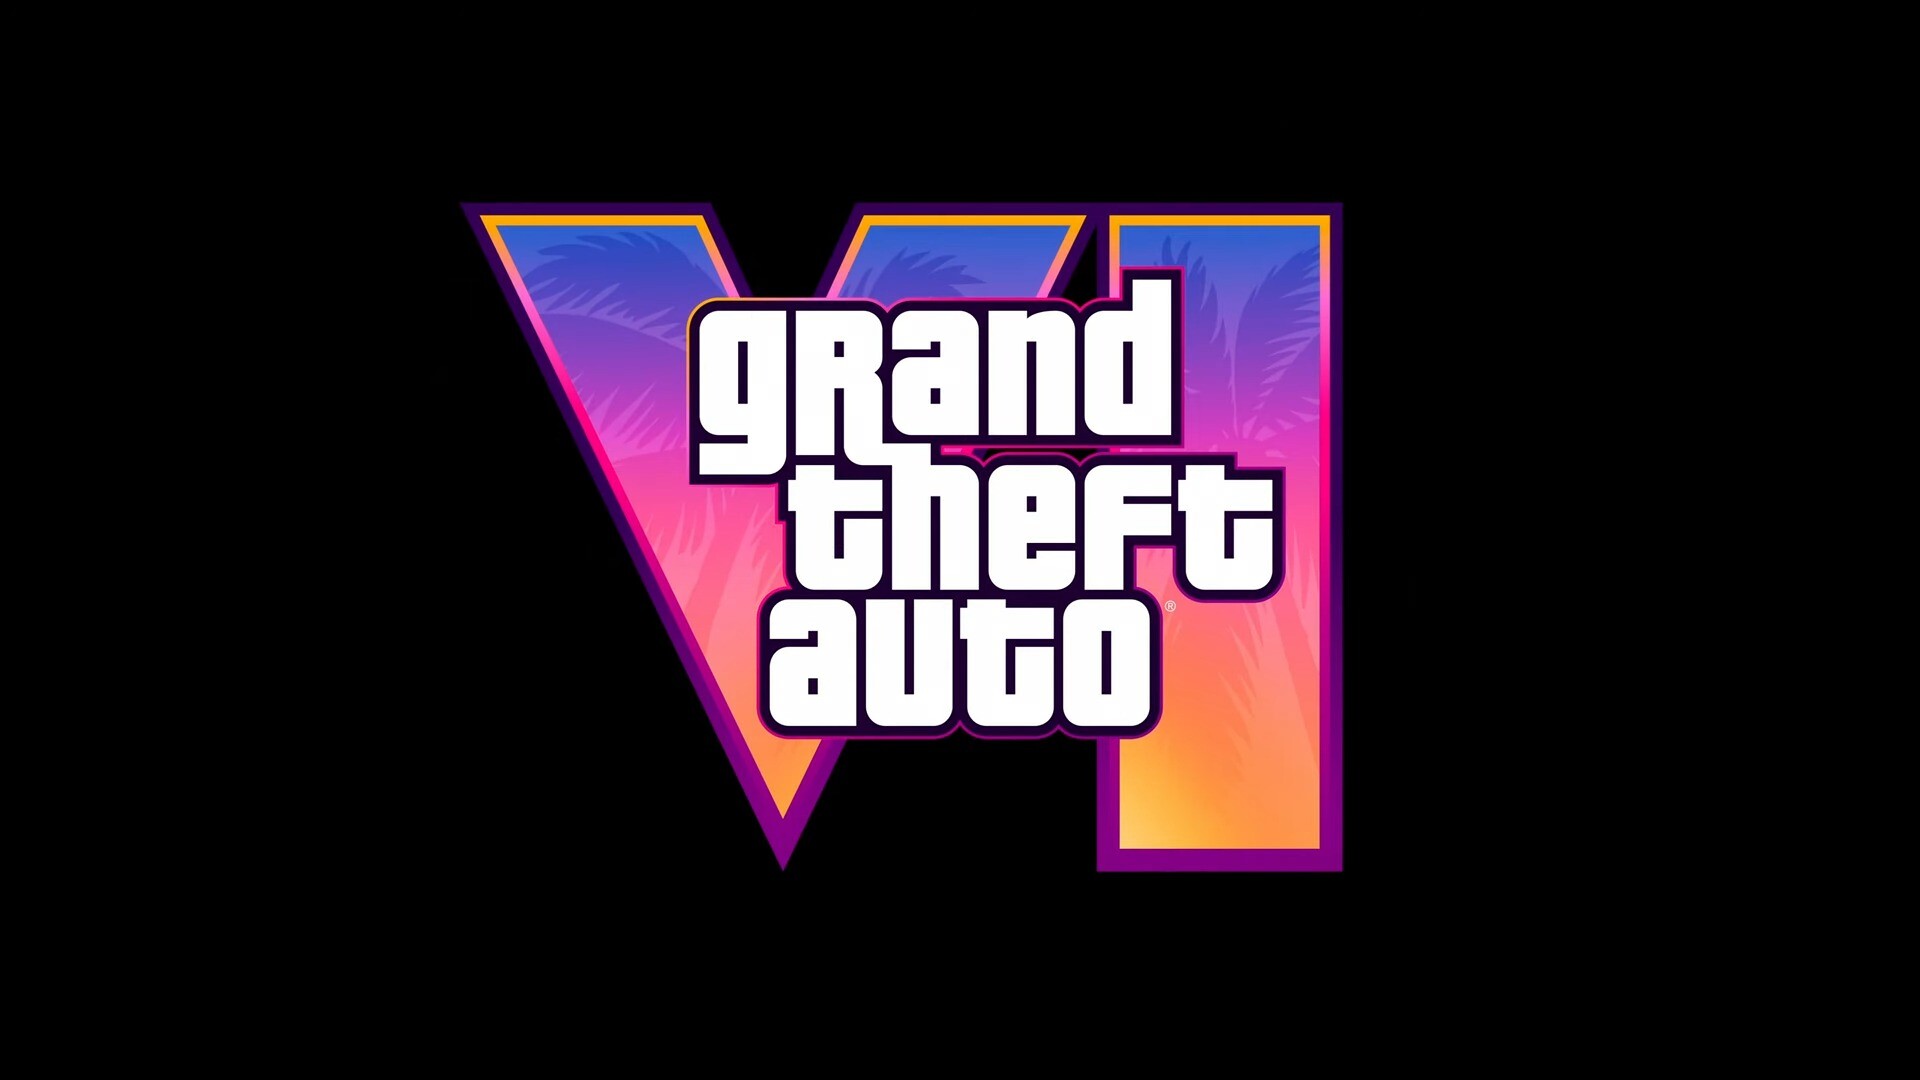 Просмотры трейлера Grand Theft Auto VI перевалили за 150 млн, лайков уже больше 10 млн: с сайта NEWXBOXONE.RU